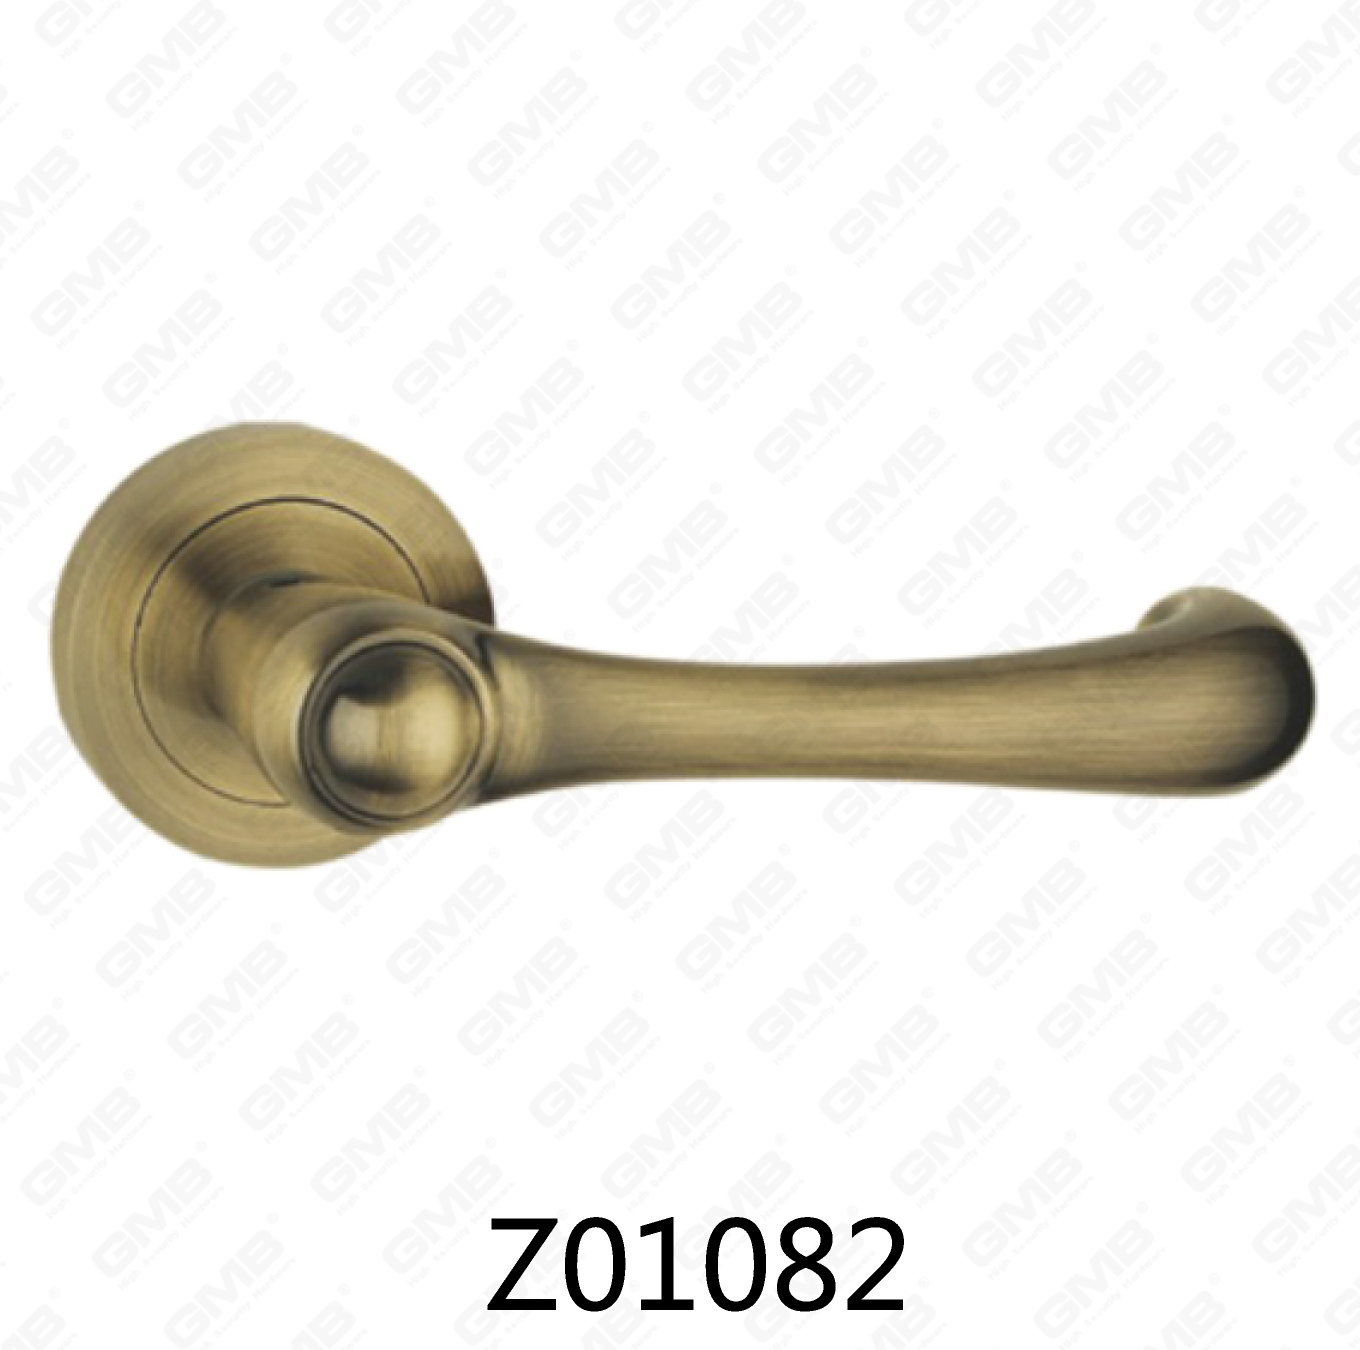 ידית דלת רוזטת אלומיניום מסגסוגת אבץ של Zamak עם רוזטה עגולה (Z01082)